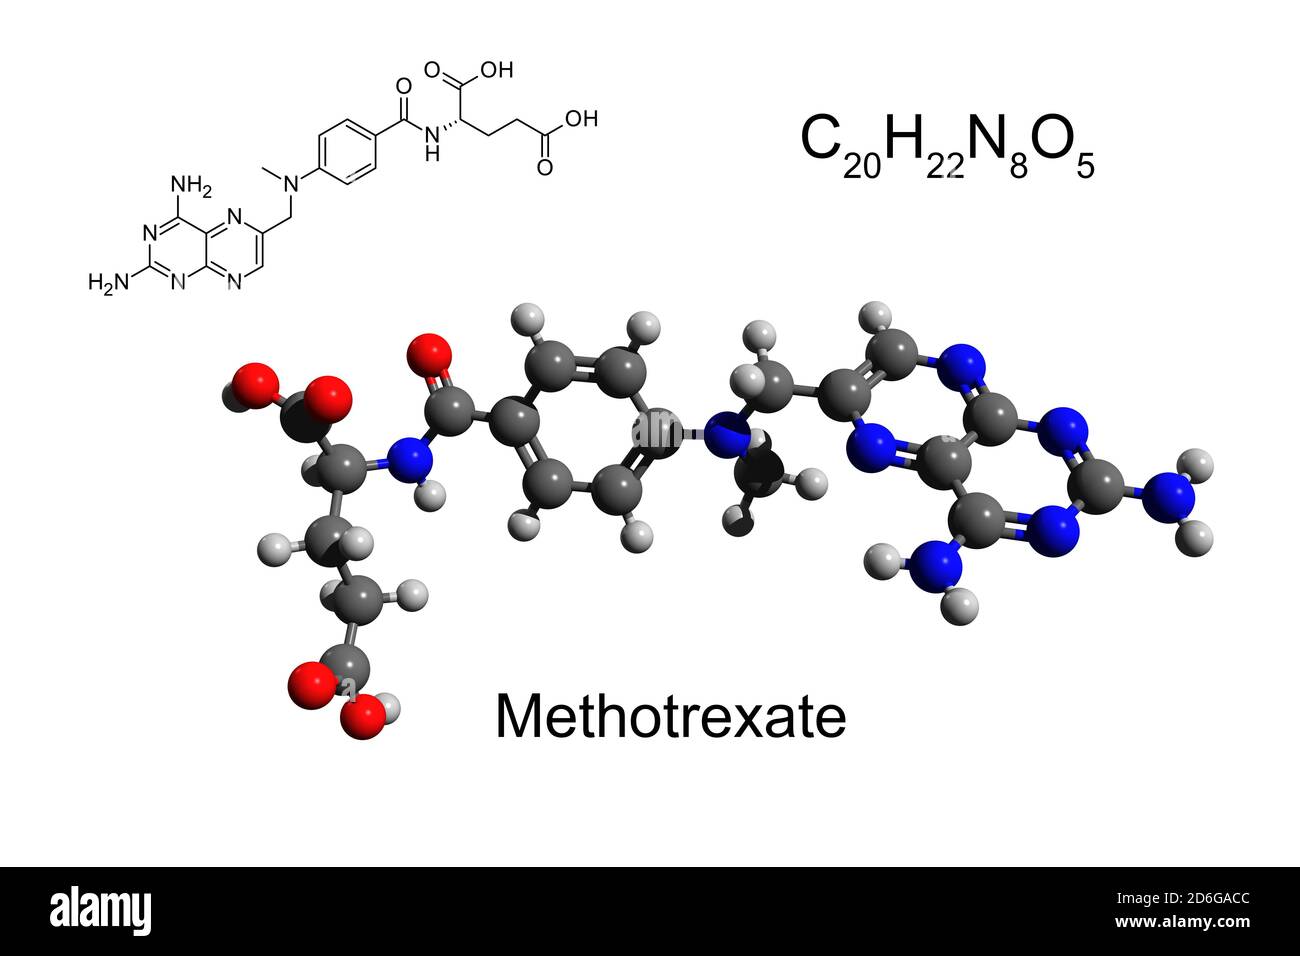 Formule chimique, formule structurale et modèle 3D boule-et-bâton du méthotrexate (MTX), connu sous le nom d'amethopterin, un agent de chimiothérapie Banque D'Images